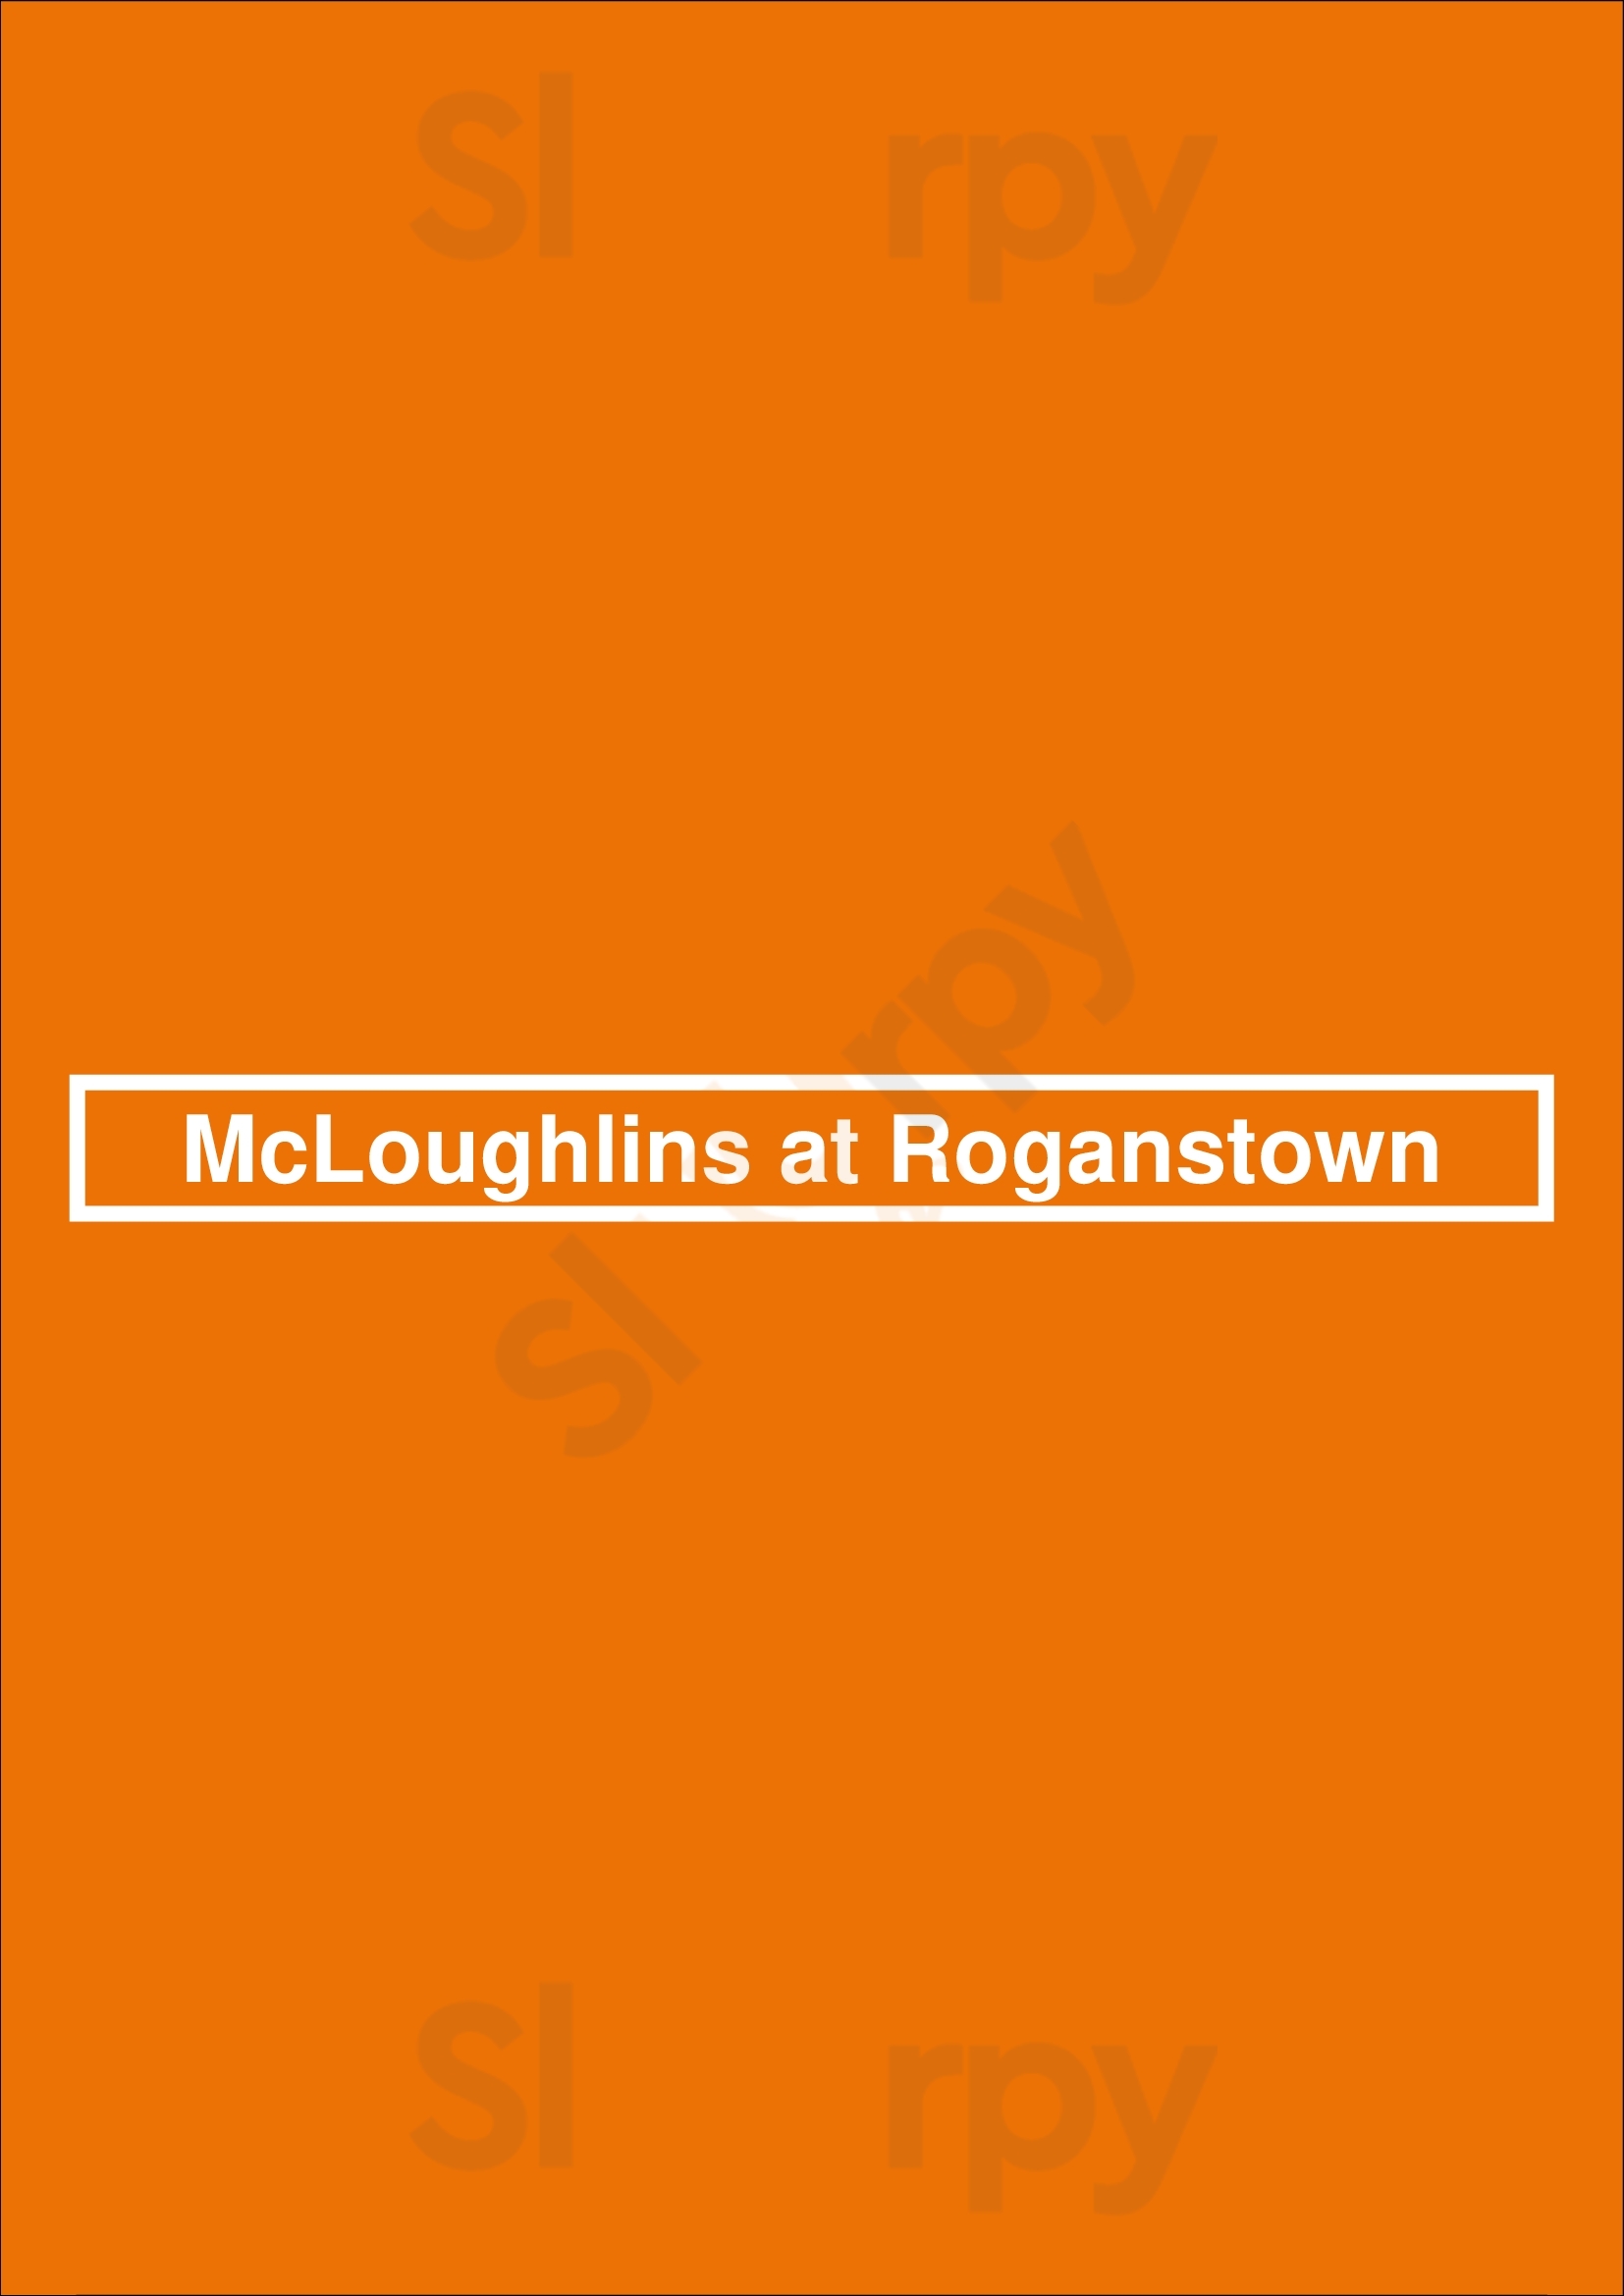 Mcloughlins At Roganstown Swords Menu - 1